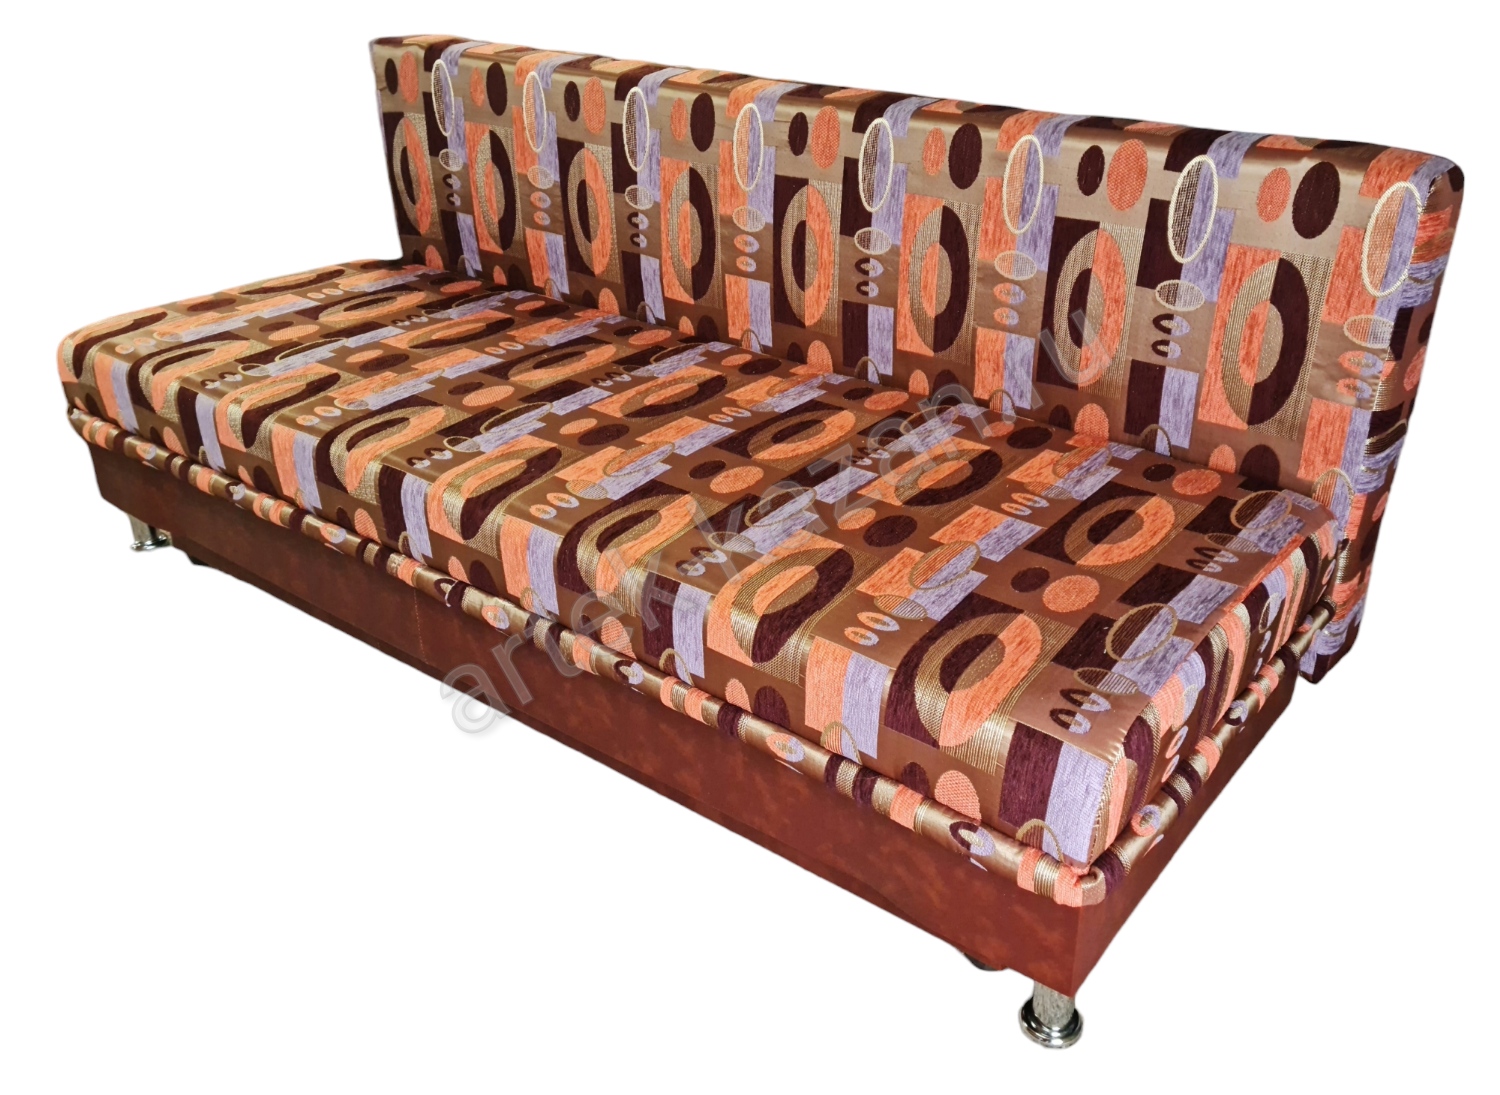 Фото 4. Купить недорогой диван по низкой цене от производителя можно у нас.